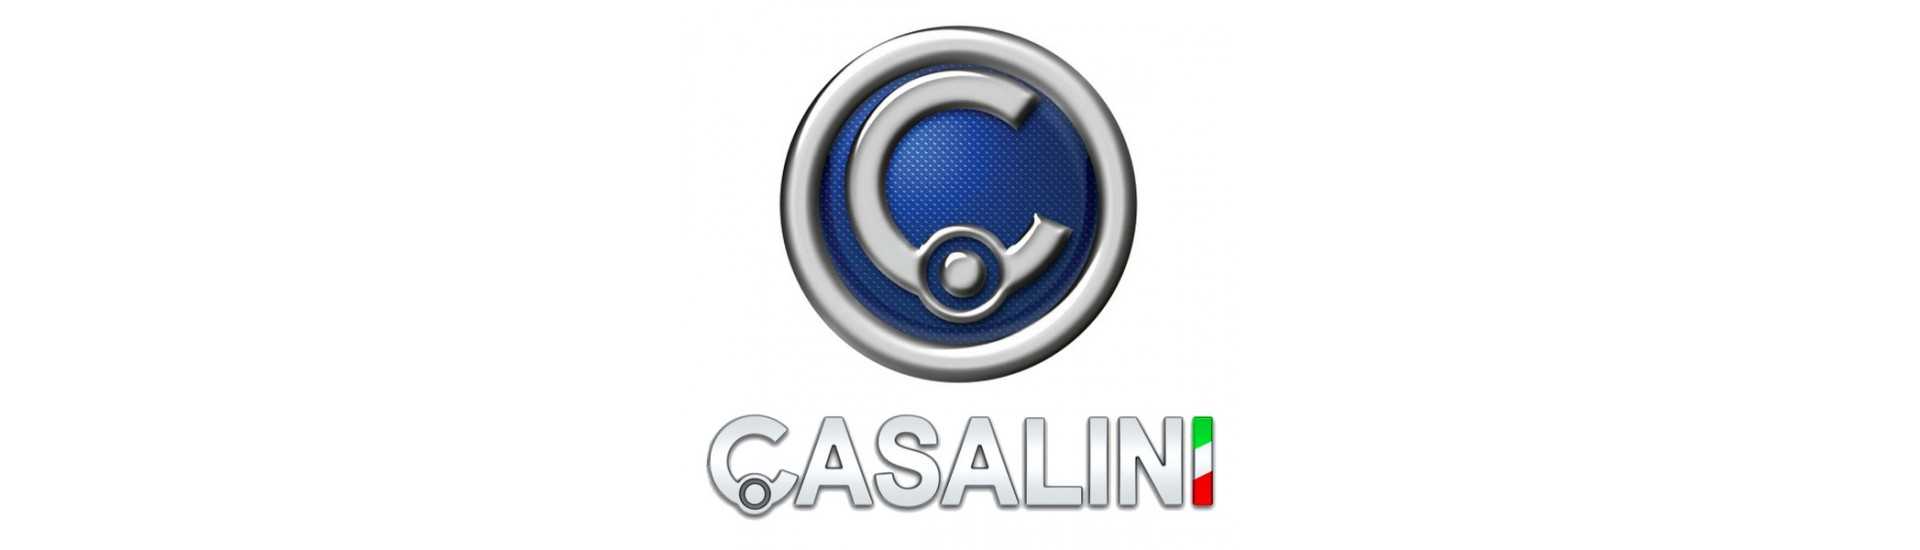 Cerradura de puerta de ropa mejor precio de coche sin permiso Casalini